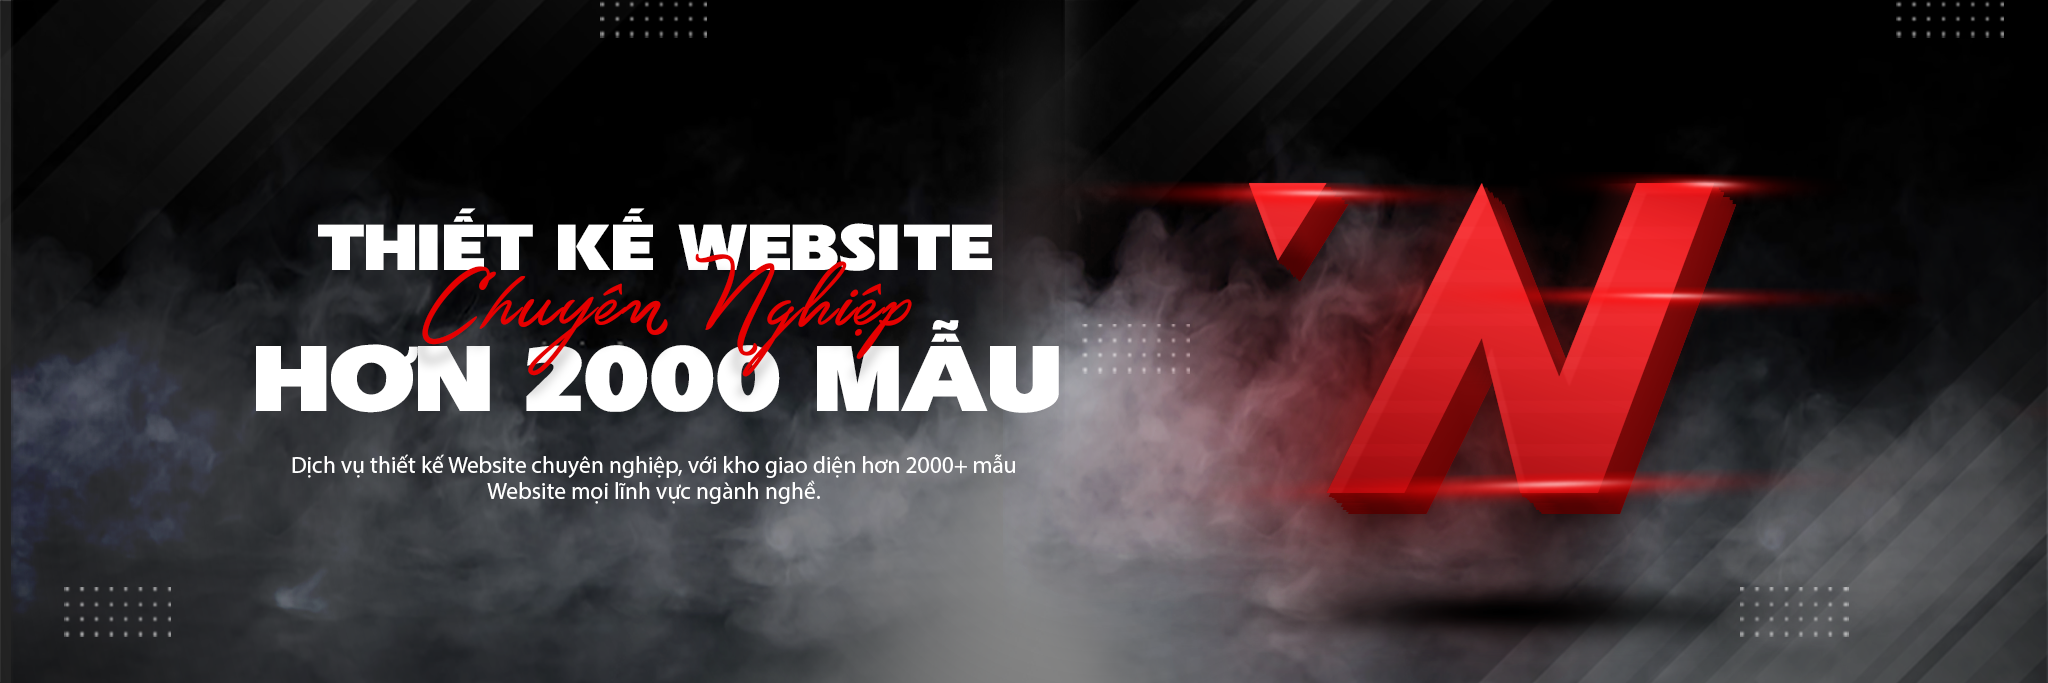 WebNow - Đơn vị thiết kế website bán yến sào chỉ trong 24 giá rẻ chuyên nghiệp tại TP.HCM 